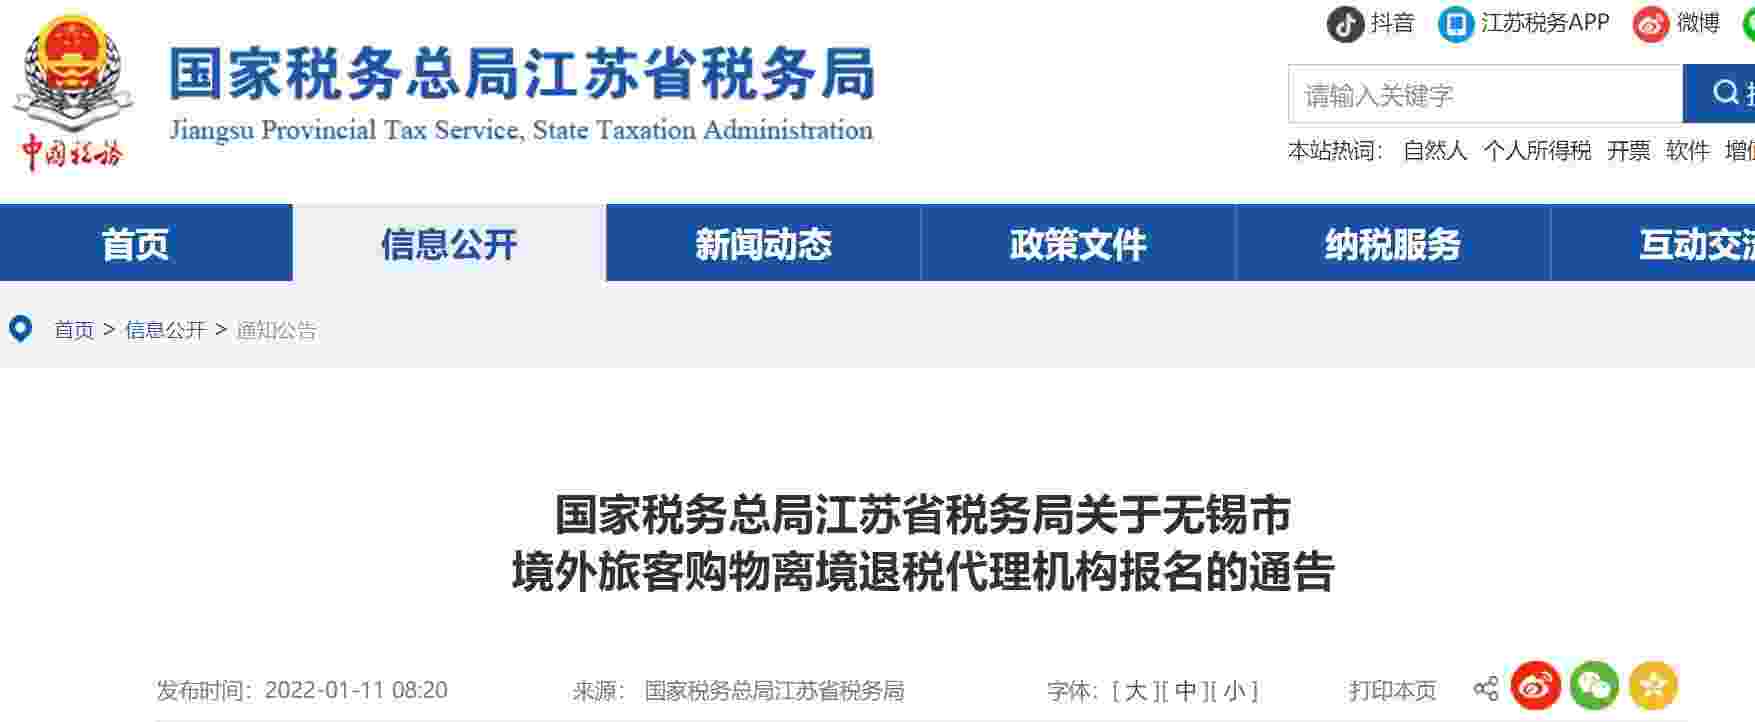 江苏省税务局关于无锡市 境外旅客购物离境退税代理机构报名的通告